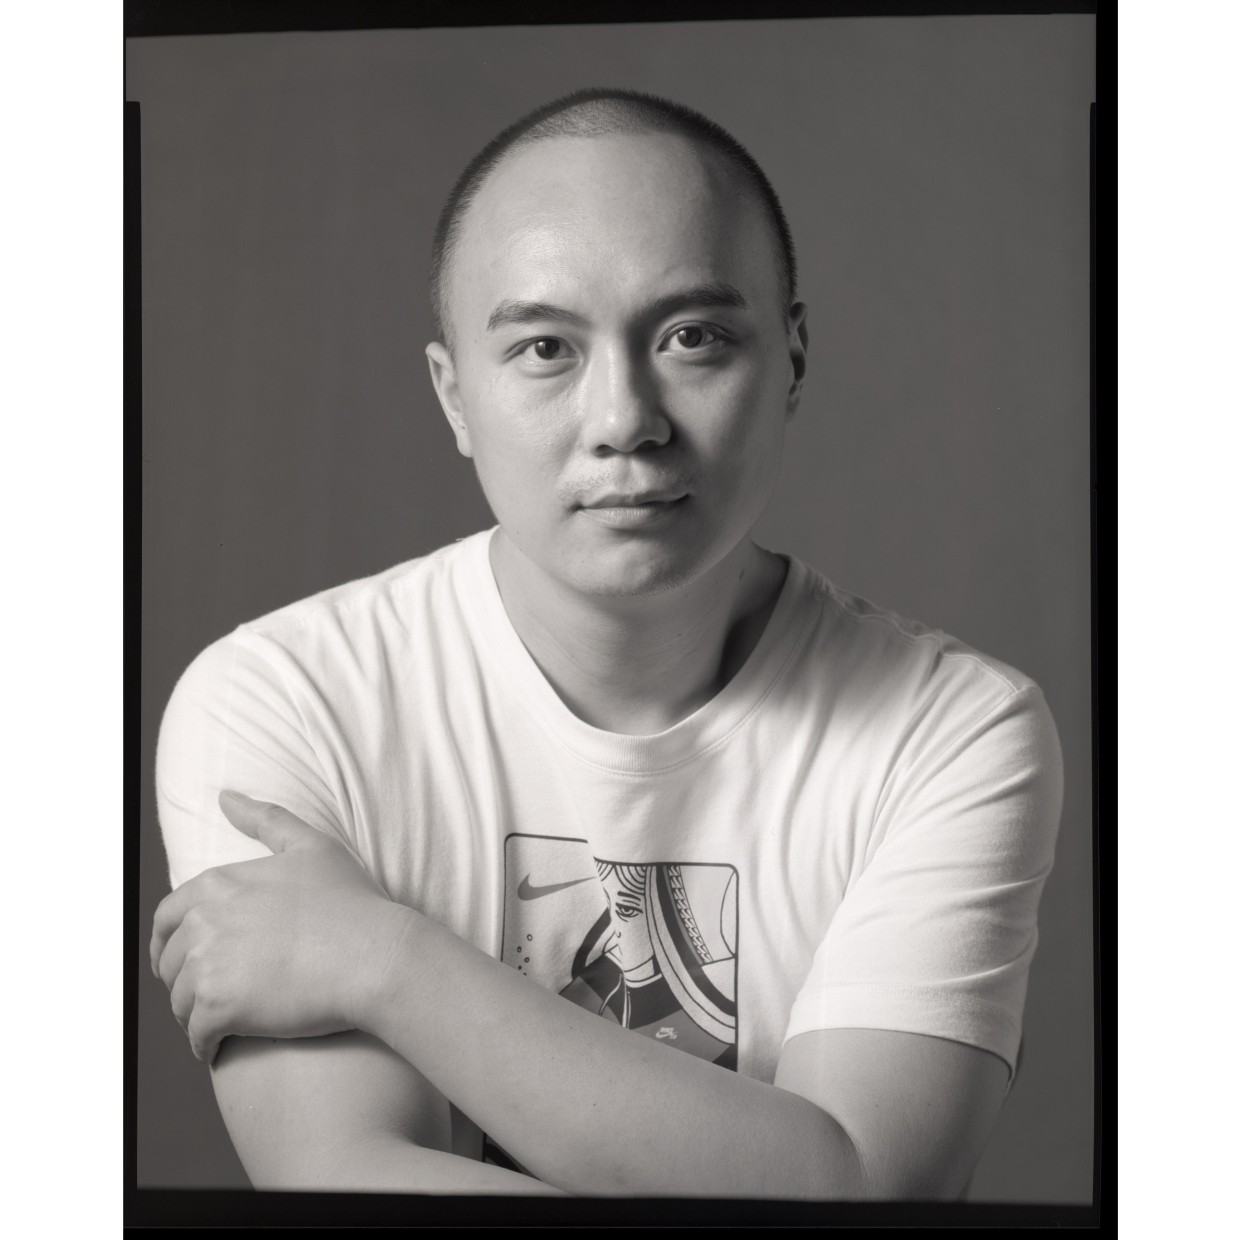 ARTIST: Wang Shiran Wang Shiran was born in 1988 in Dujiangyang City, China. He is a lecturer at Zhejiang University...